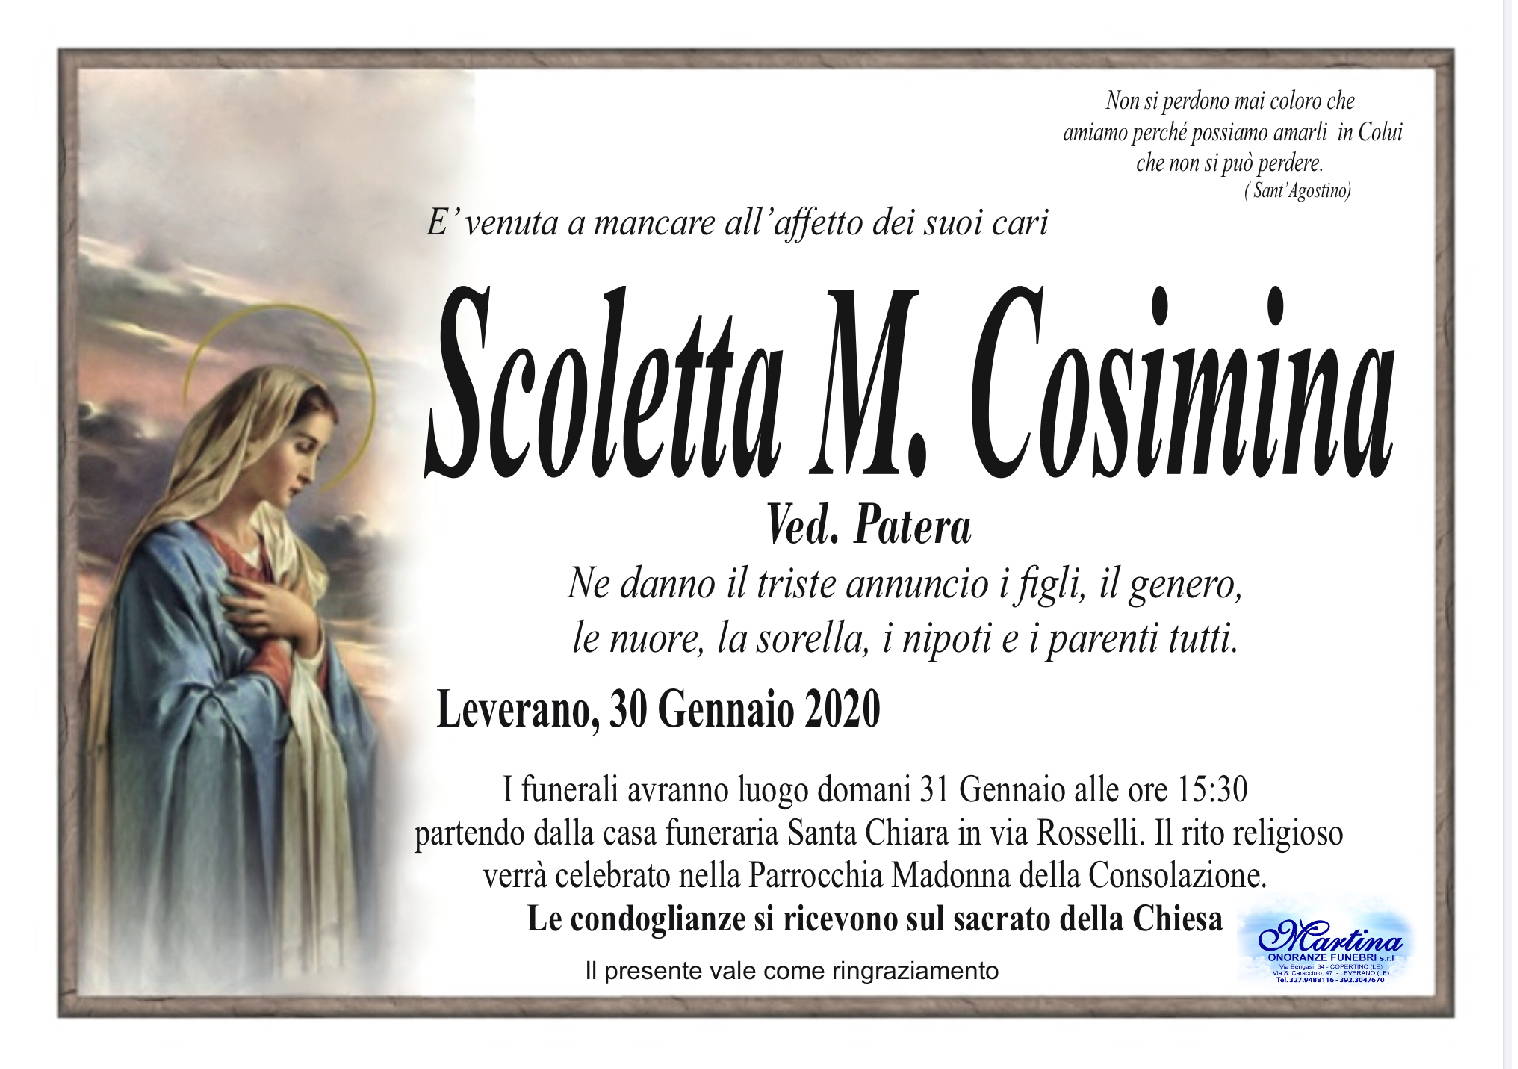 M. Cosimina Scoletta